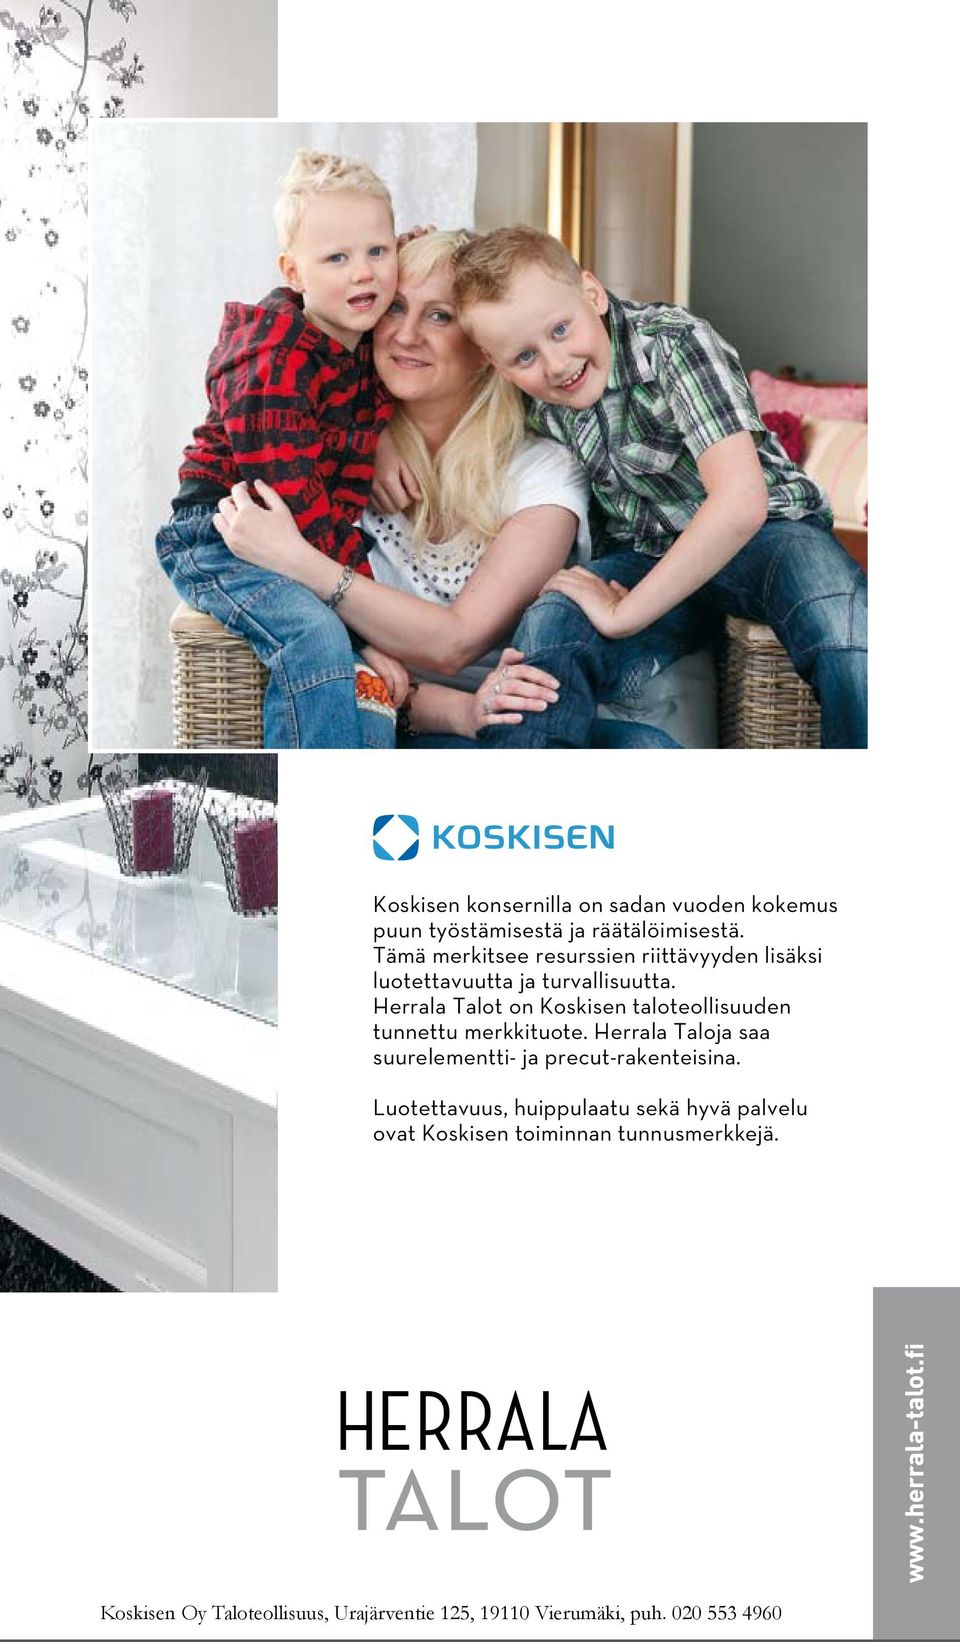 Herrala Talot on Koskisen taloteollisuuden tunnettu merkkituote.